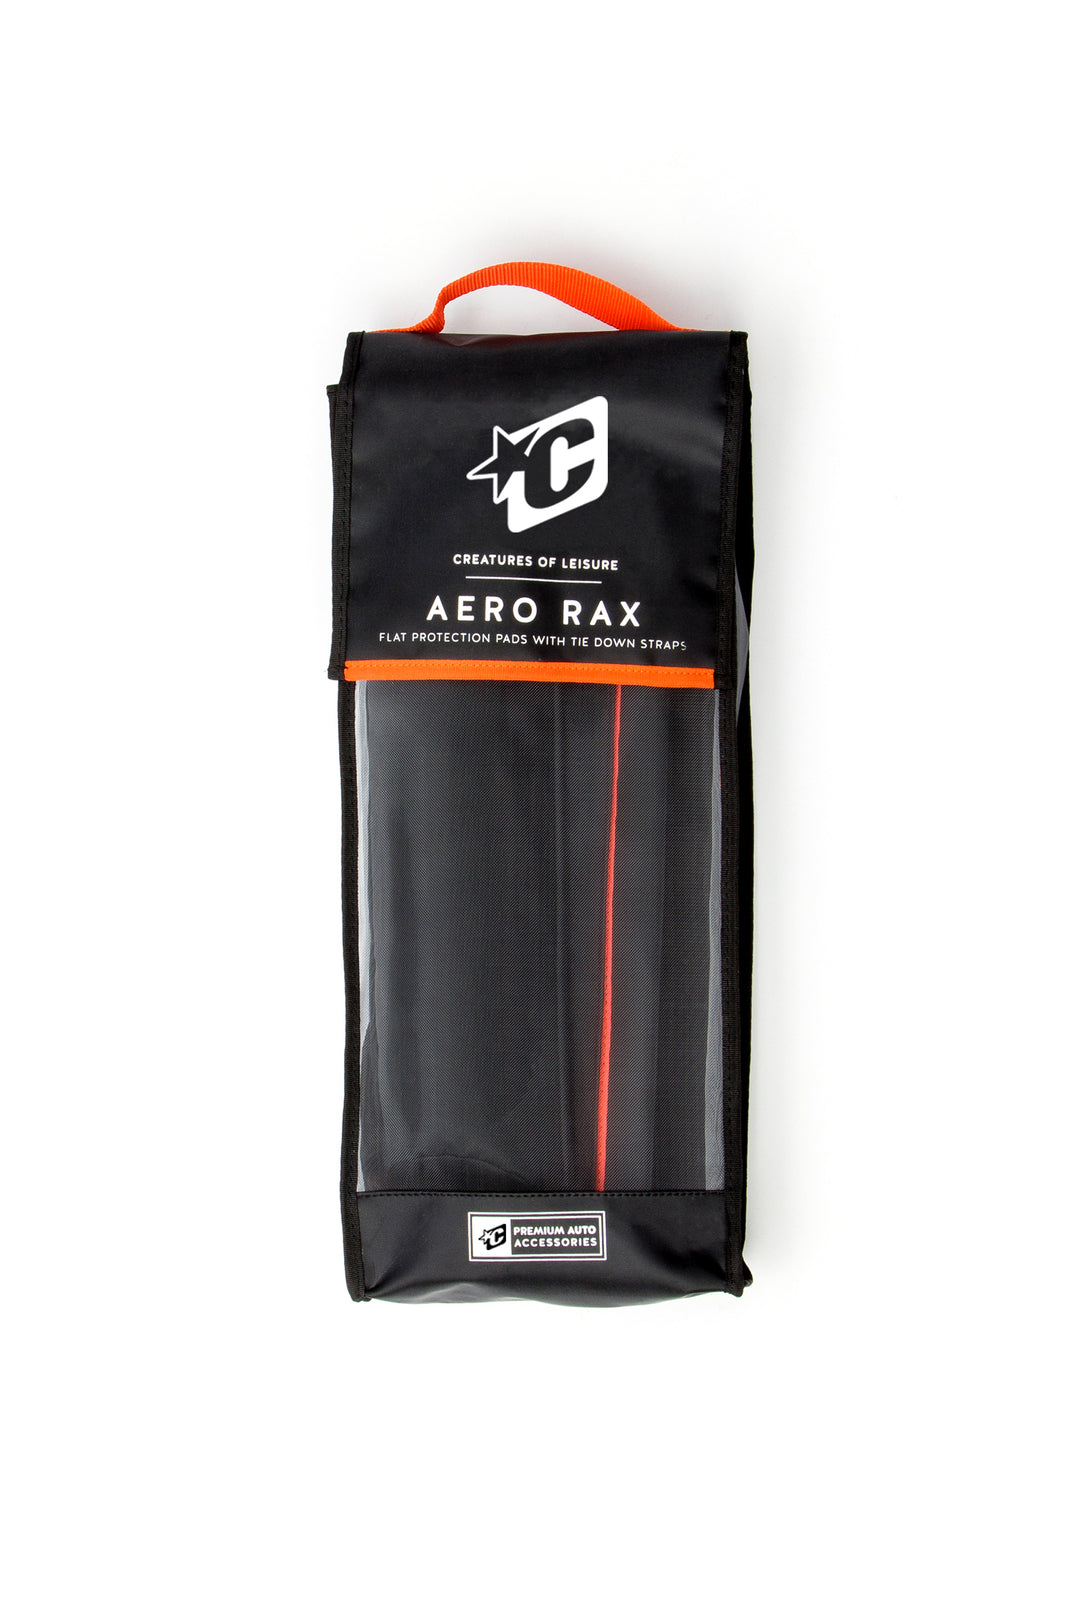 Aero Rax